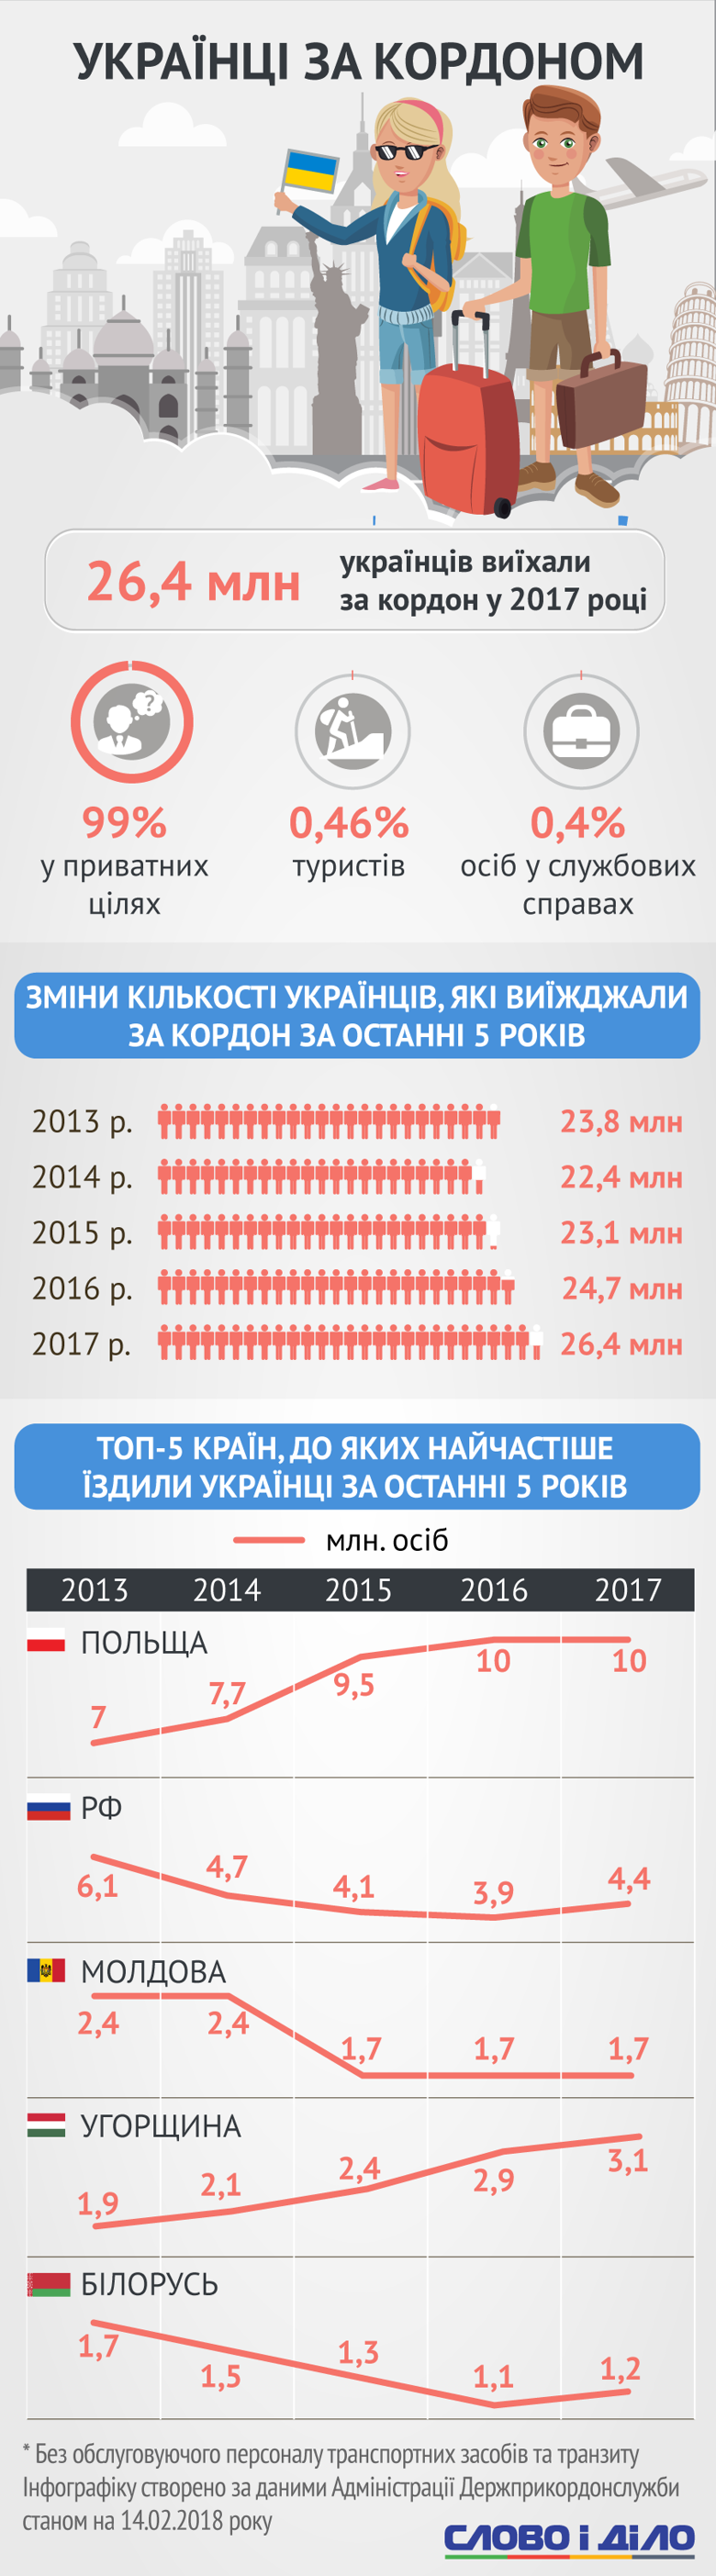 У Держстаті підрахували, скільки іноземців побувало в Україні та чи змогли наші співвітчизники повністю скористатися безвізом у 2017 році.